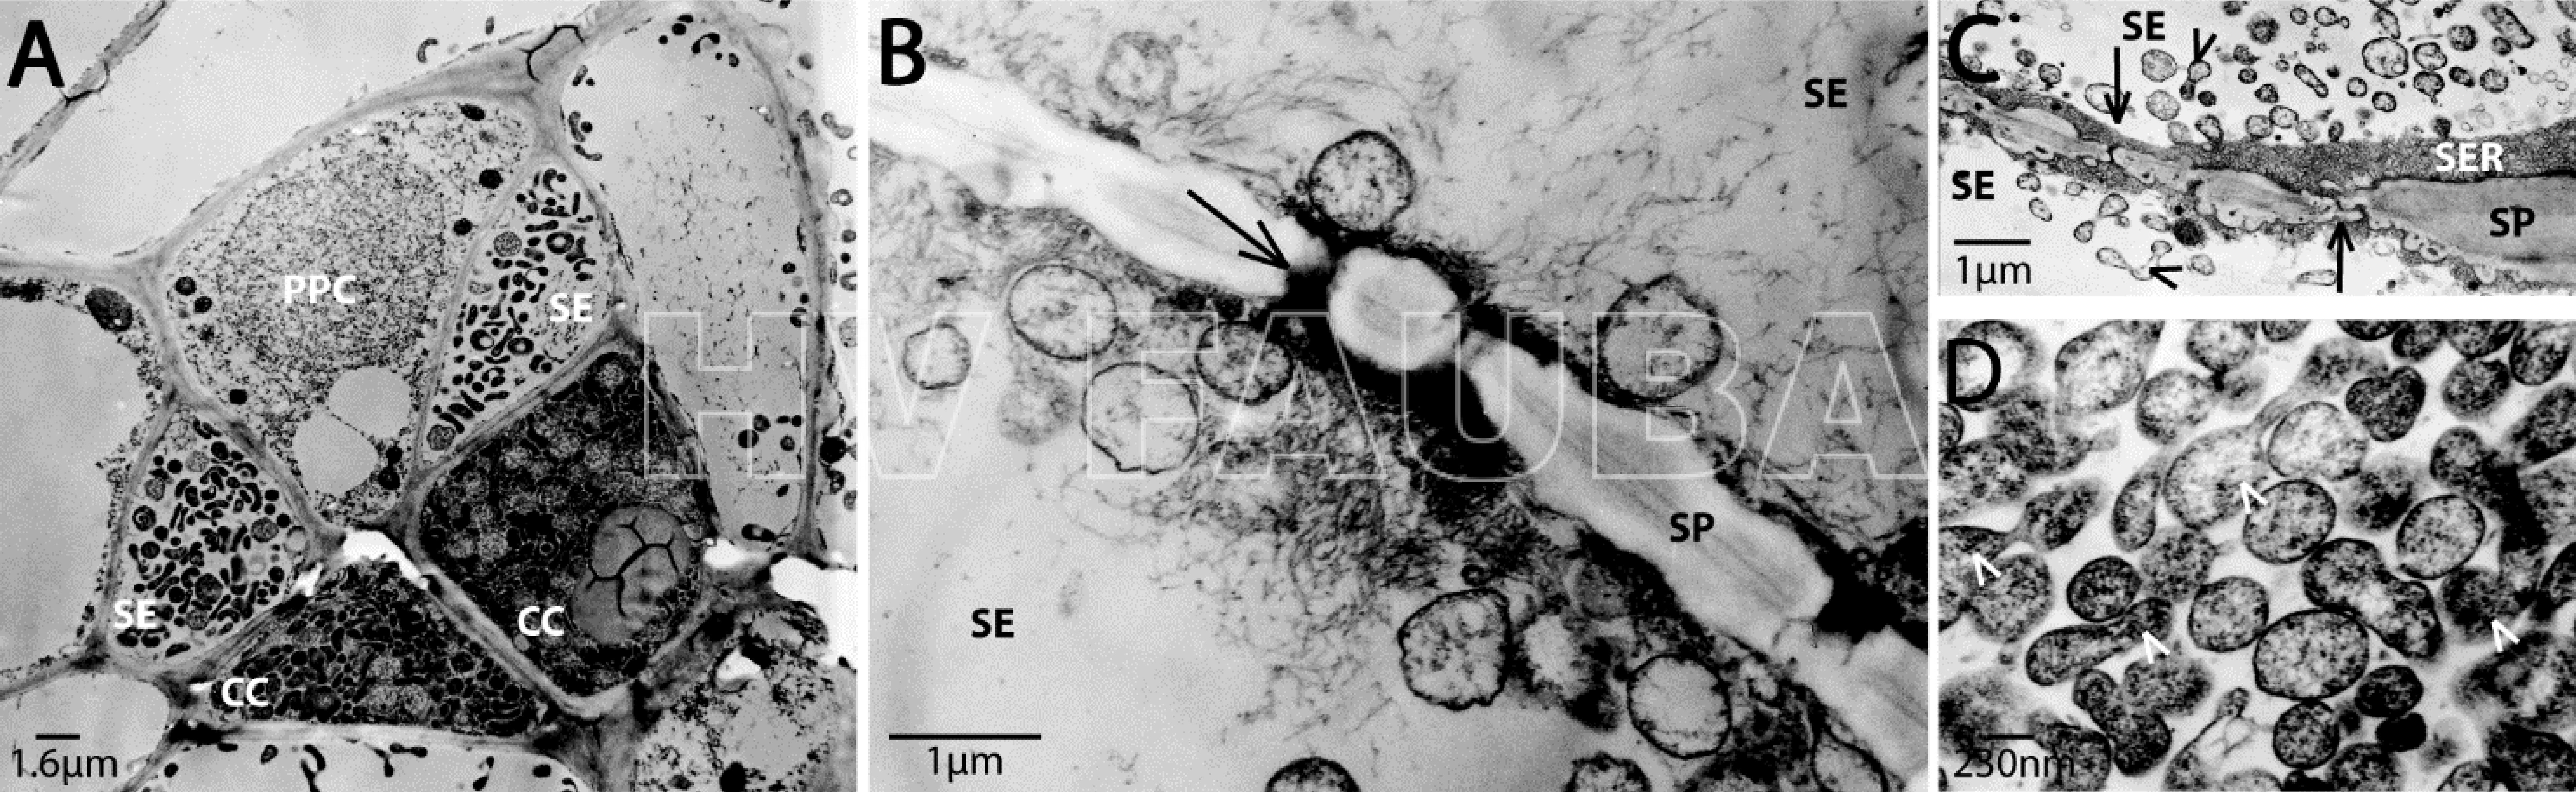 Micrografías electrónicas de transmisión de Candidatus P. mali infectando plantas de Cuscuta odorata. La descripción general de las células del floema (A) muestra una infección de tubos cribosos (SE), células compañeras (CC) y células del parénquima del floema (PPC) con fitoplasmas. Un mayor aumento o zoom (B, C) ilustra la acumulación de fitoplasmas en los tubos cribosos y los fitoplasmas densamente empaquetados, algunos son brotes (puntas de flecha) (D). Los poros del tamiz (tubo criboso) están marcados con flechas. SP (sieve plate), placa de tamiz; SER (sieve element reticulum), retículo de elemento tamiz. Autor: Zimmermann et al., 2015